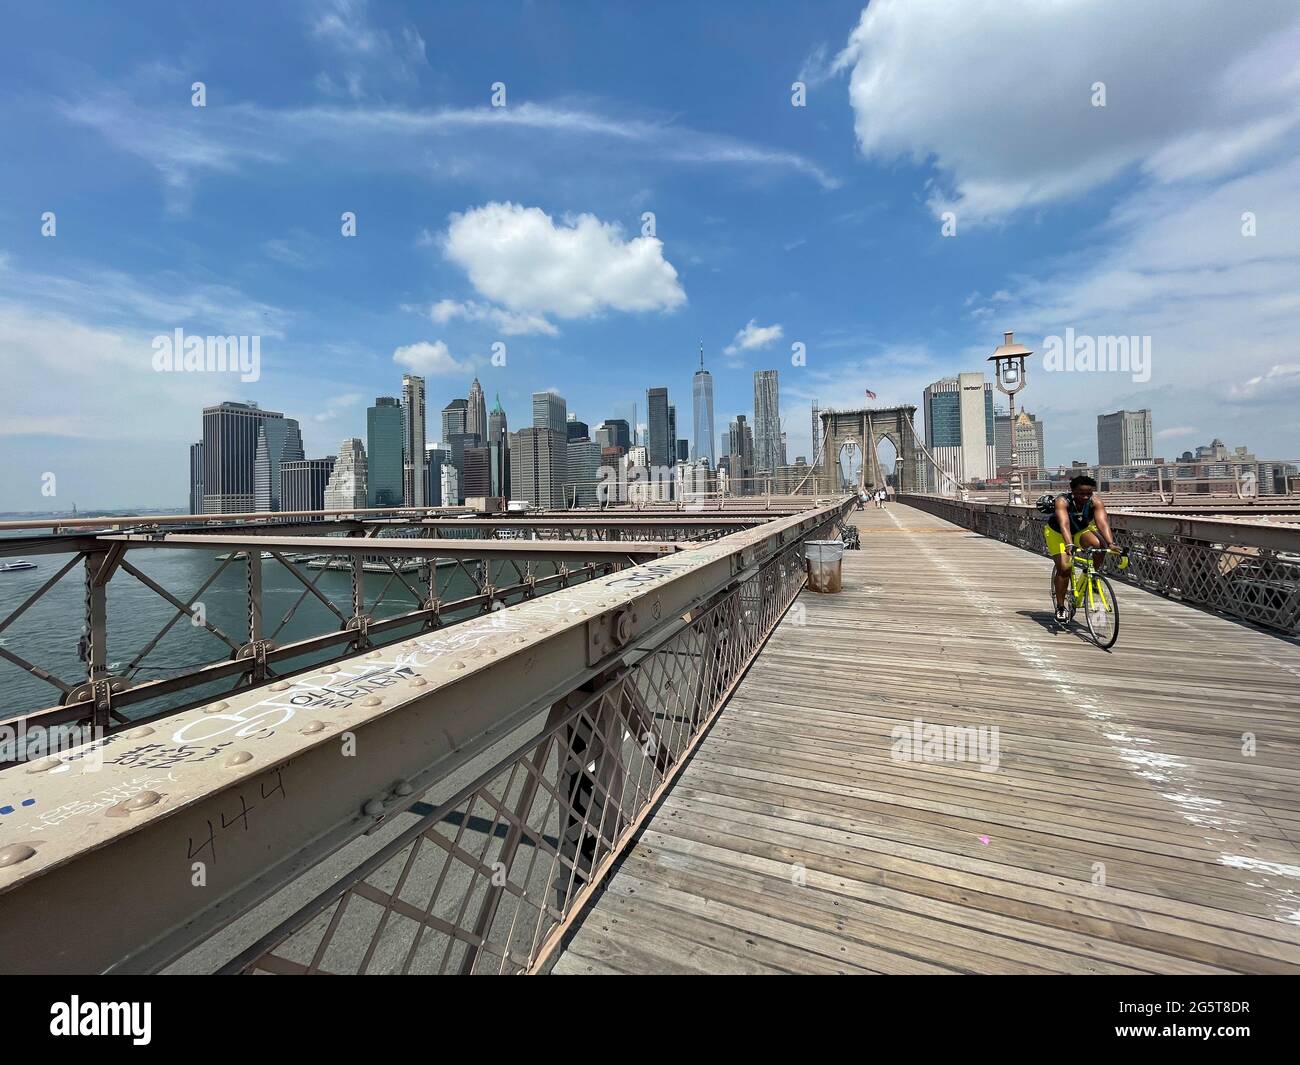 El paseo cruzando el Puente de Brooklyn en Nueva York tiene carriles separados para el peatón senderistas y ciclistas. Foto de stock